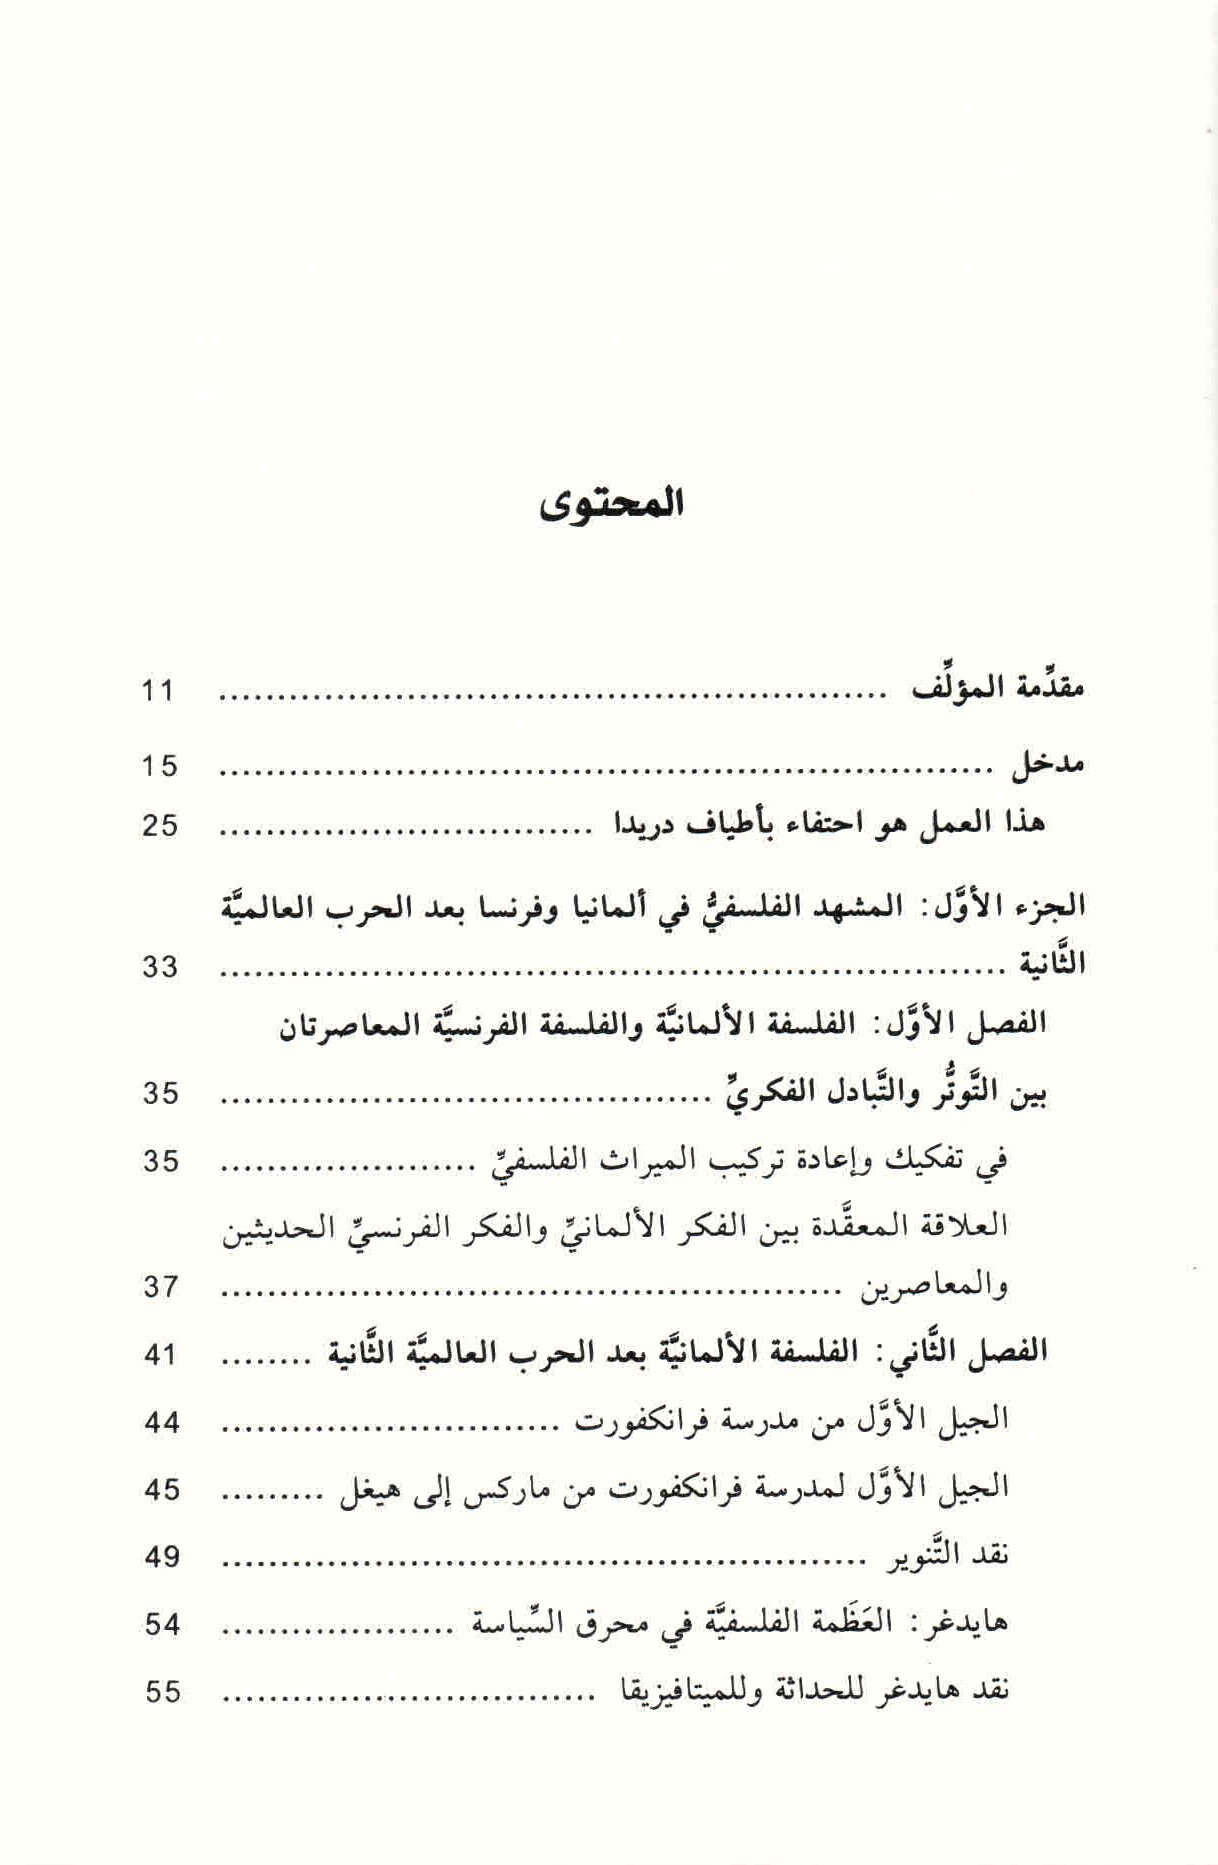 ص. 7 قائمة محتويات كتاب التباسات الحداثة.